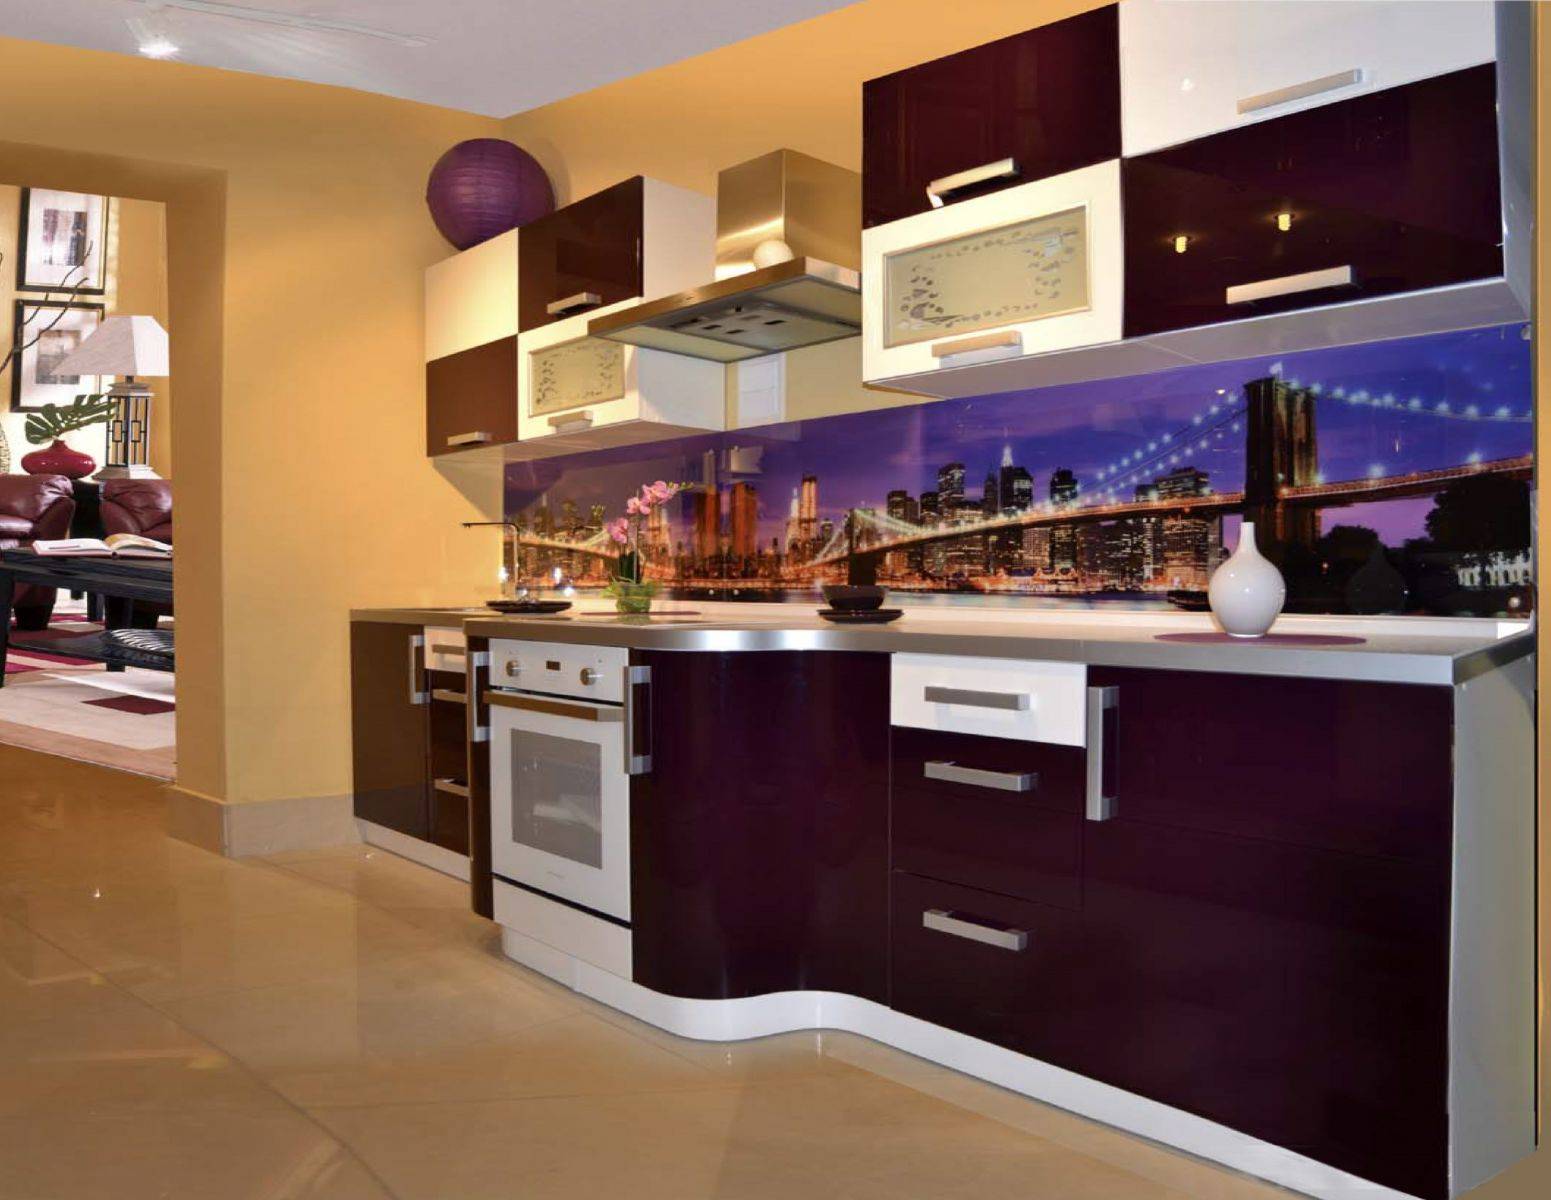 Кухня цвета баклажан: фото интерьера в баклажановом цвете, гарнитур и стулья